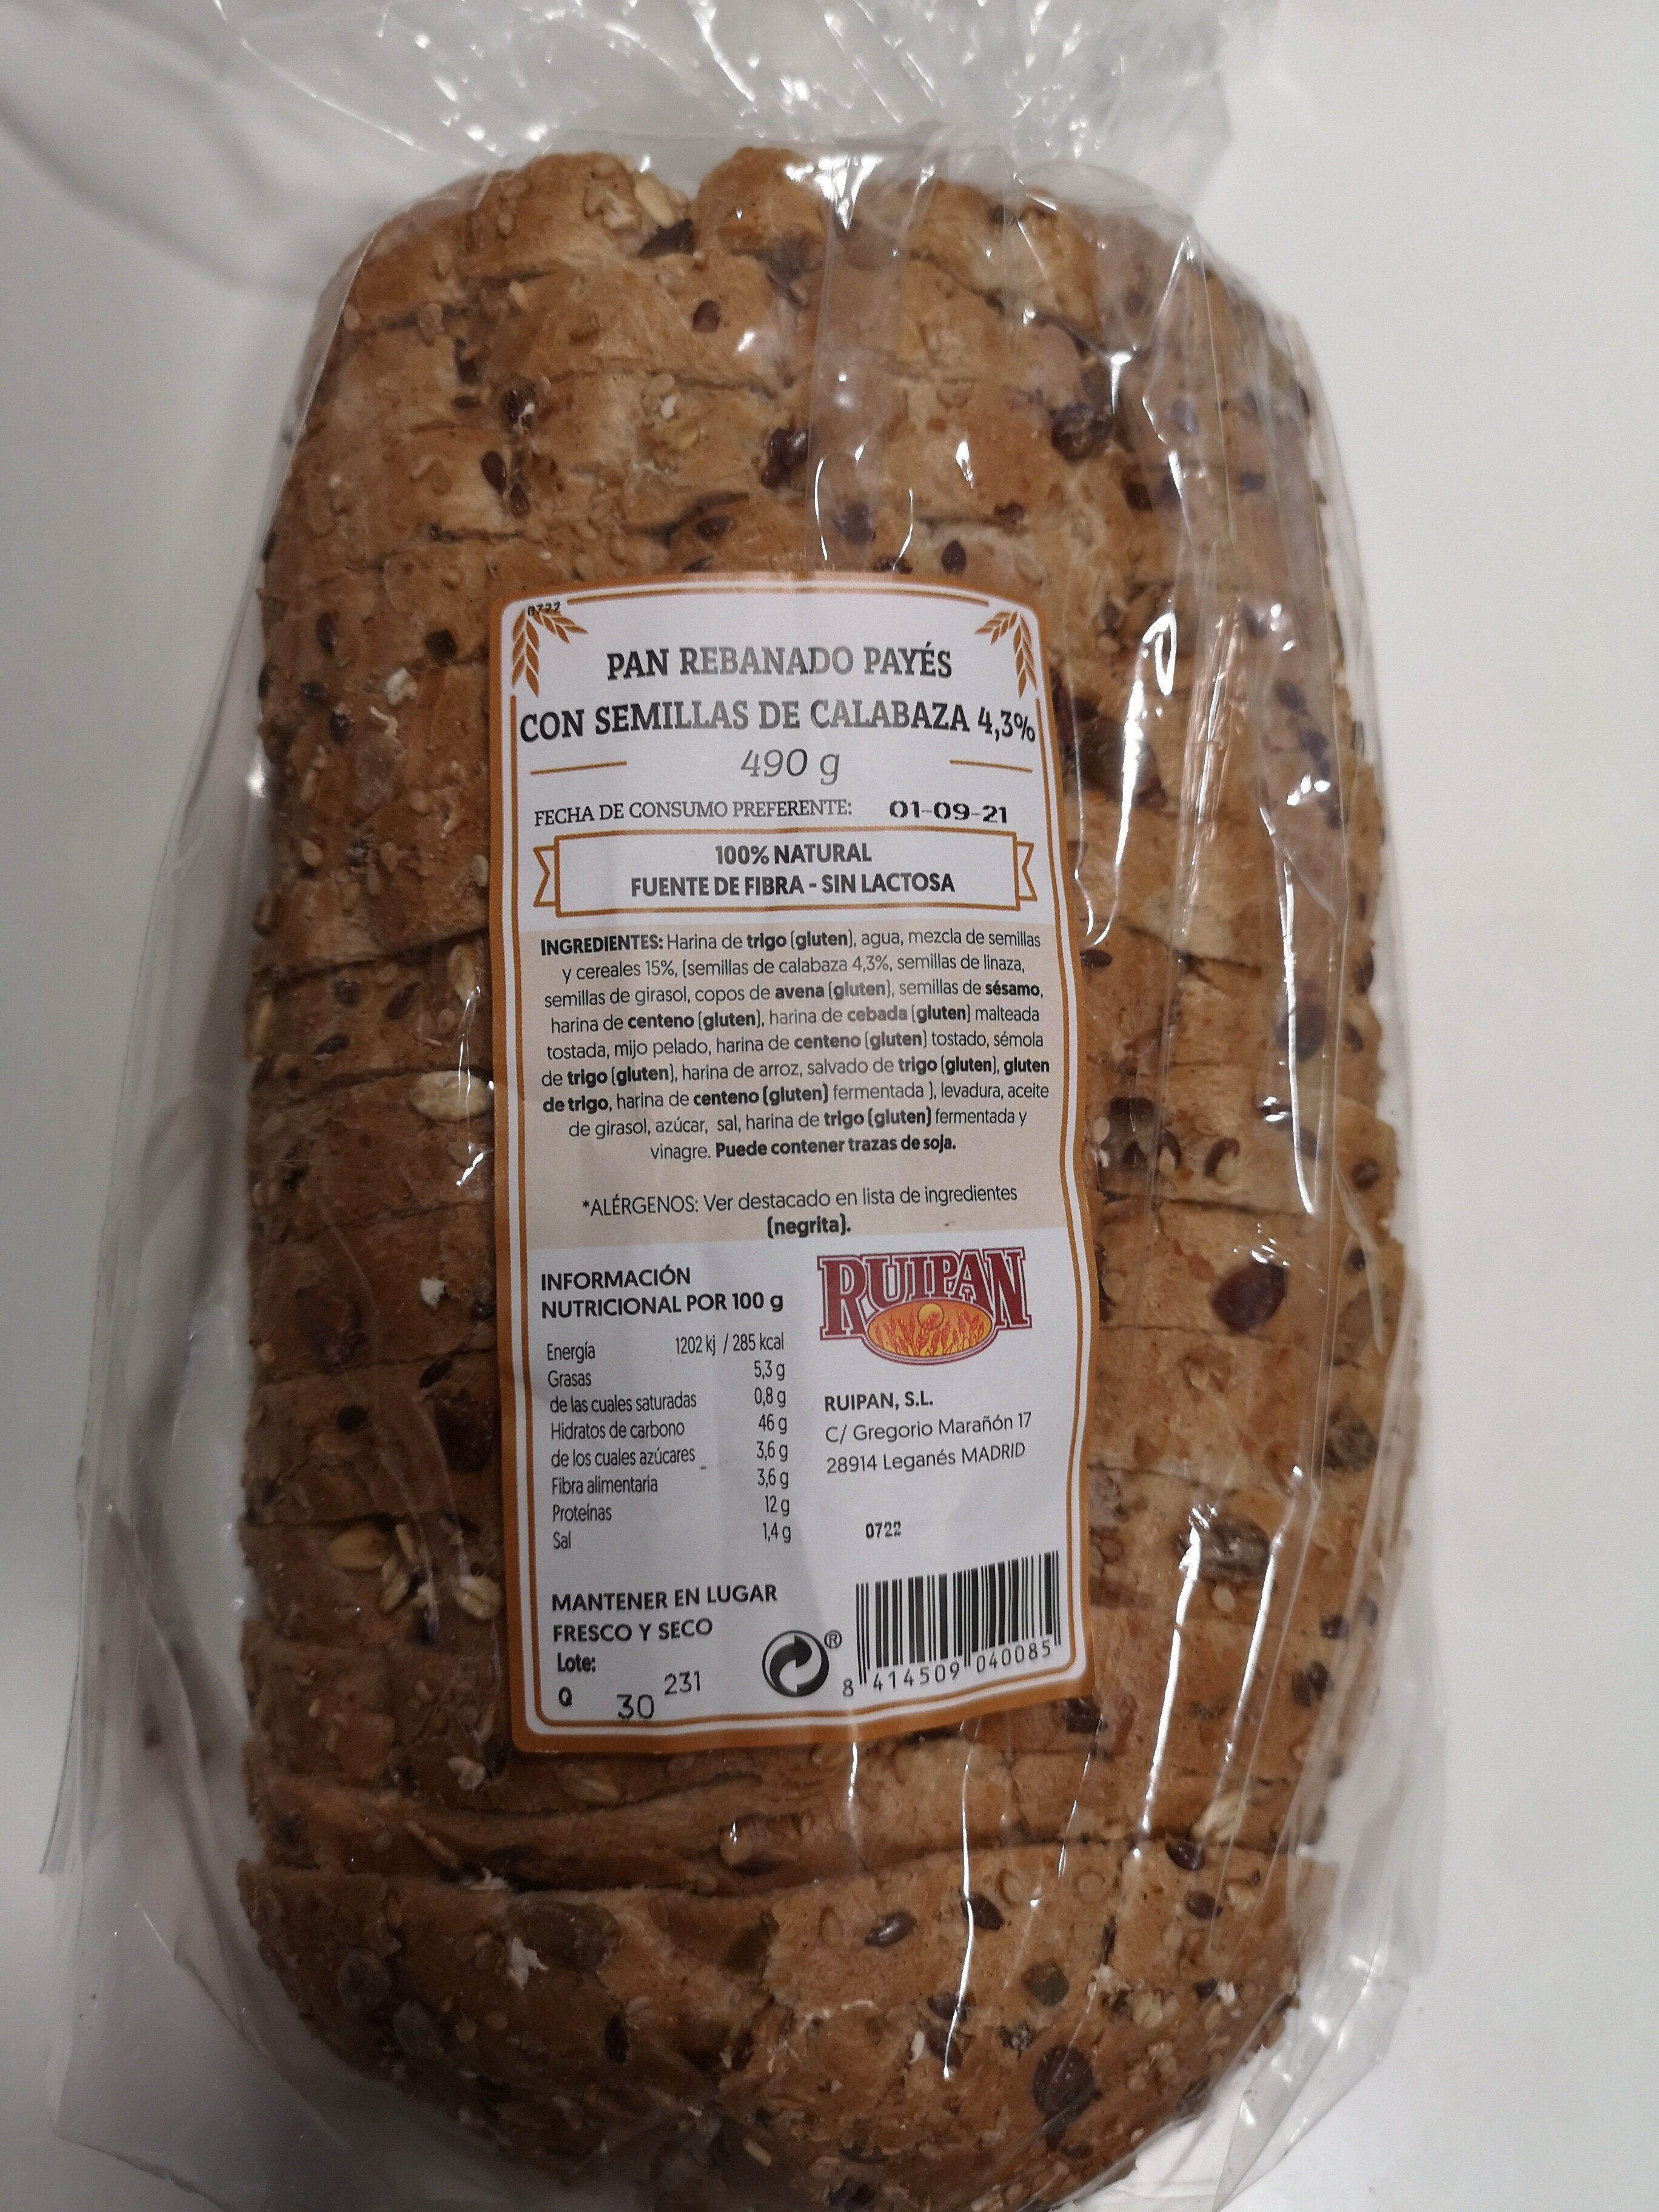 Pan rebanado payés con semillas de calabaza - Producto